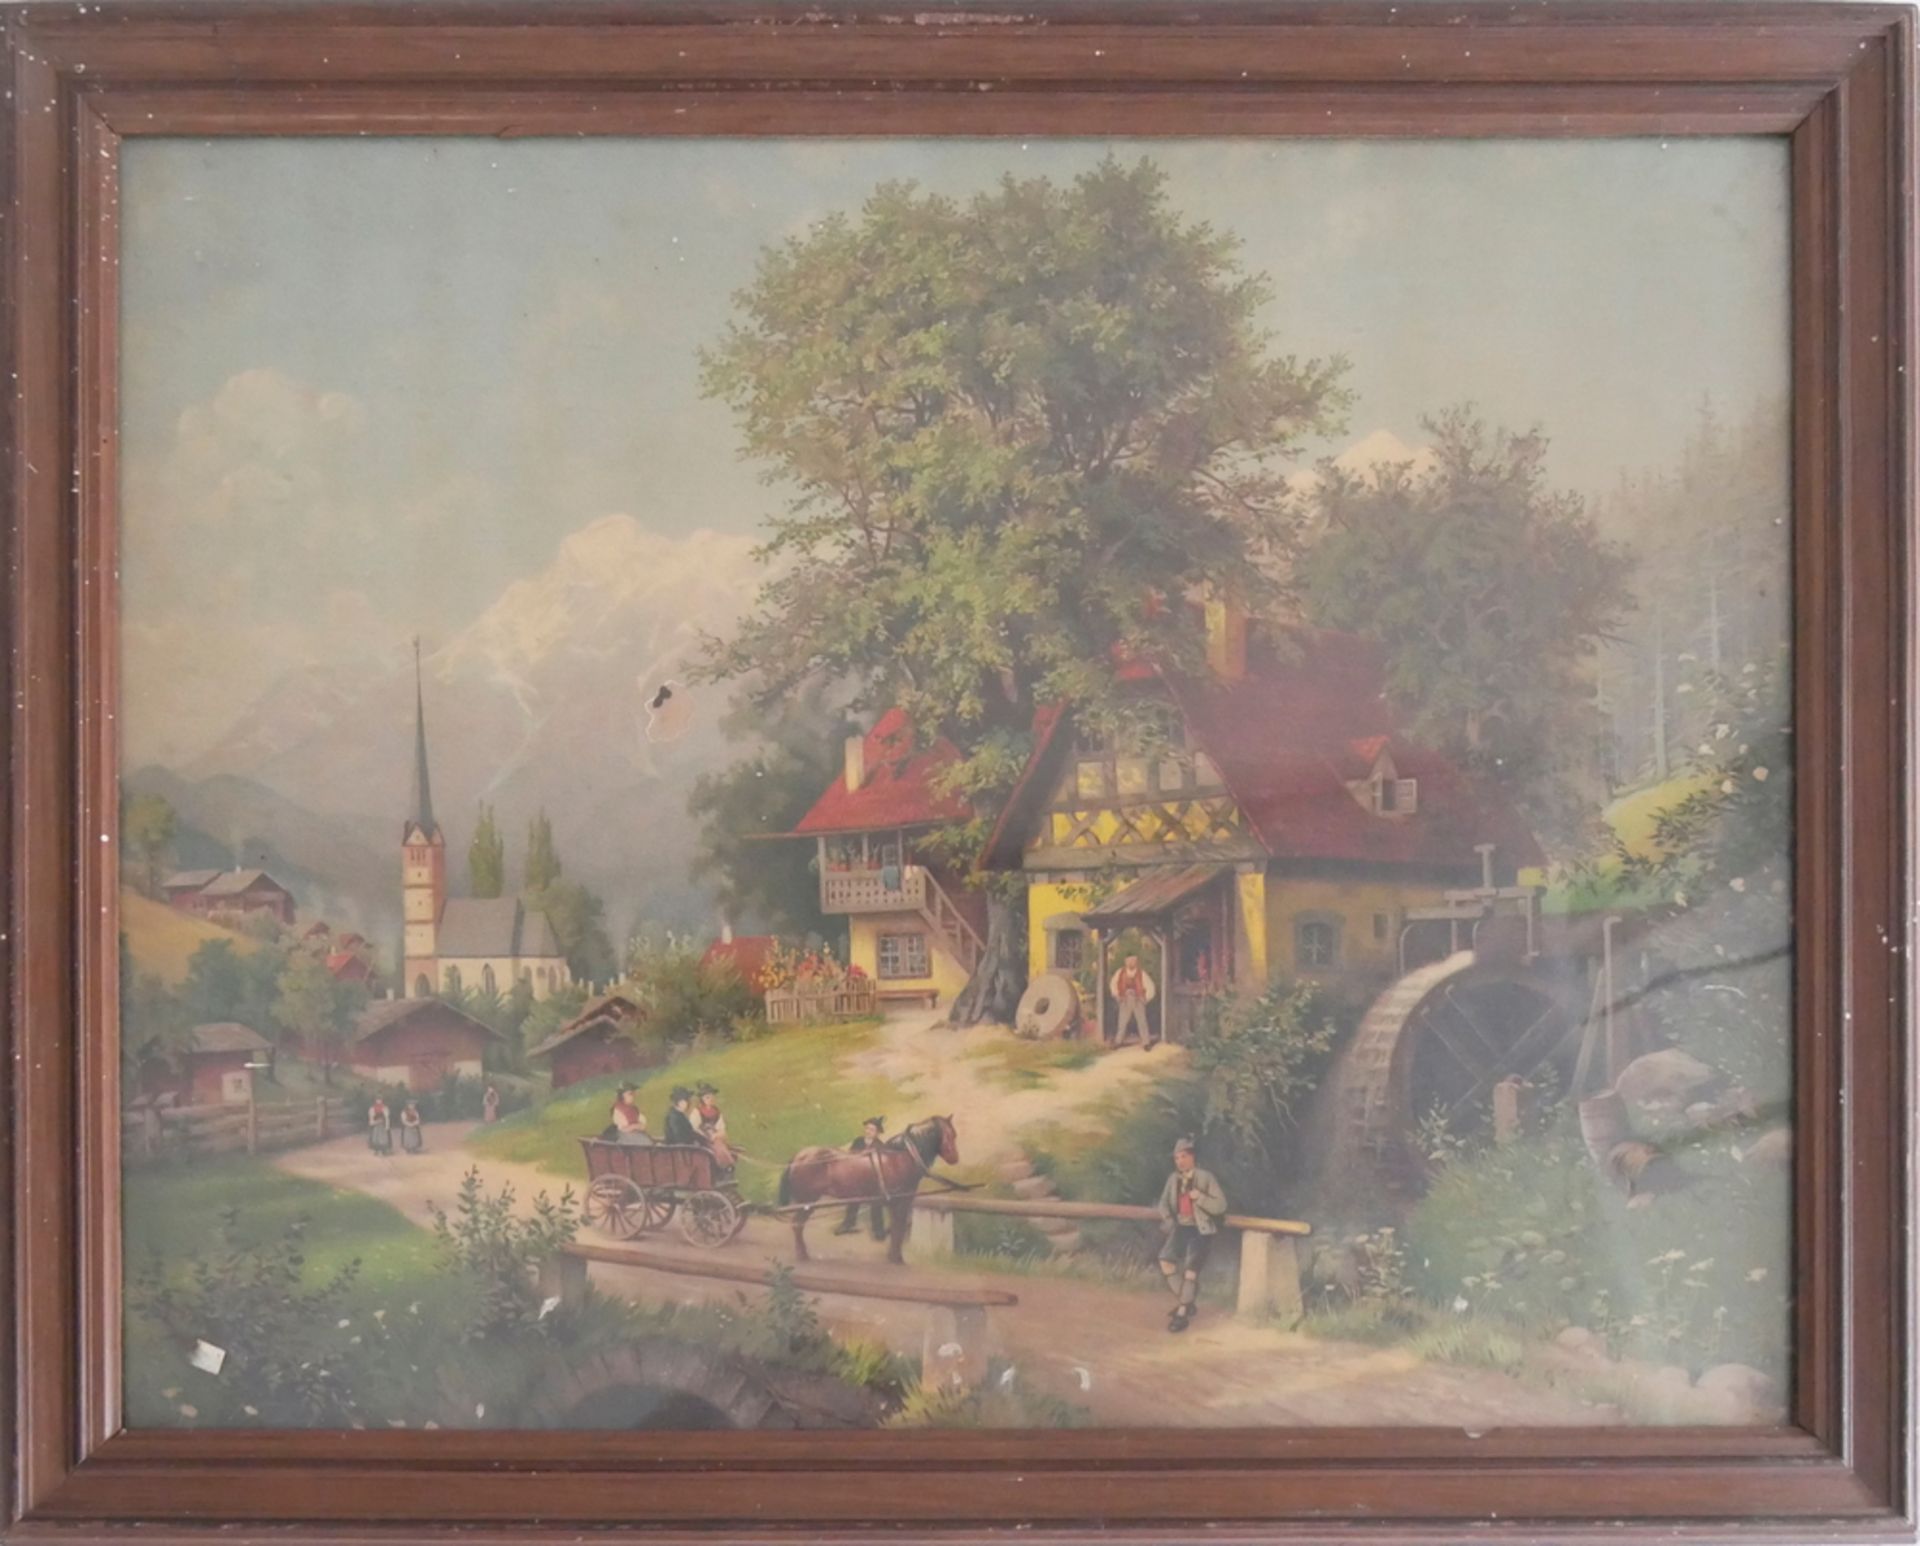 Öldruck "Landschaftsbild, Alpenszenerie" 1851-1900, hinter Glas gerahmt. Teilweise mit